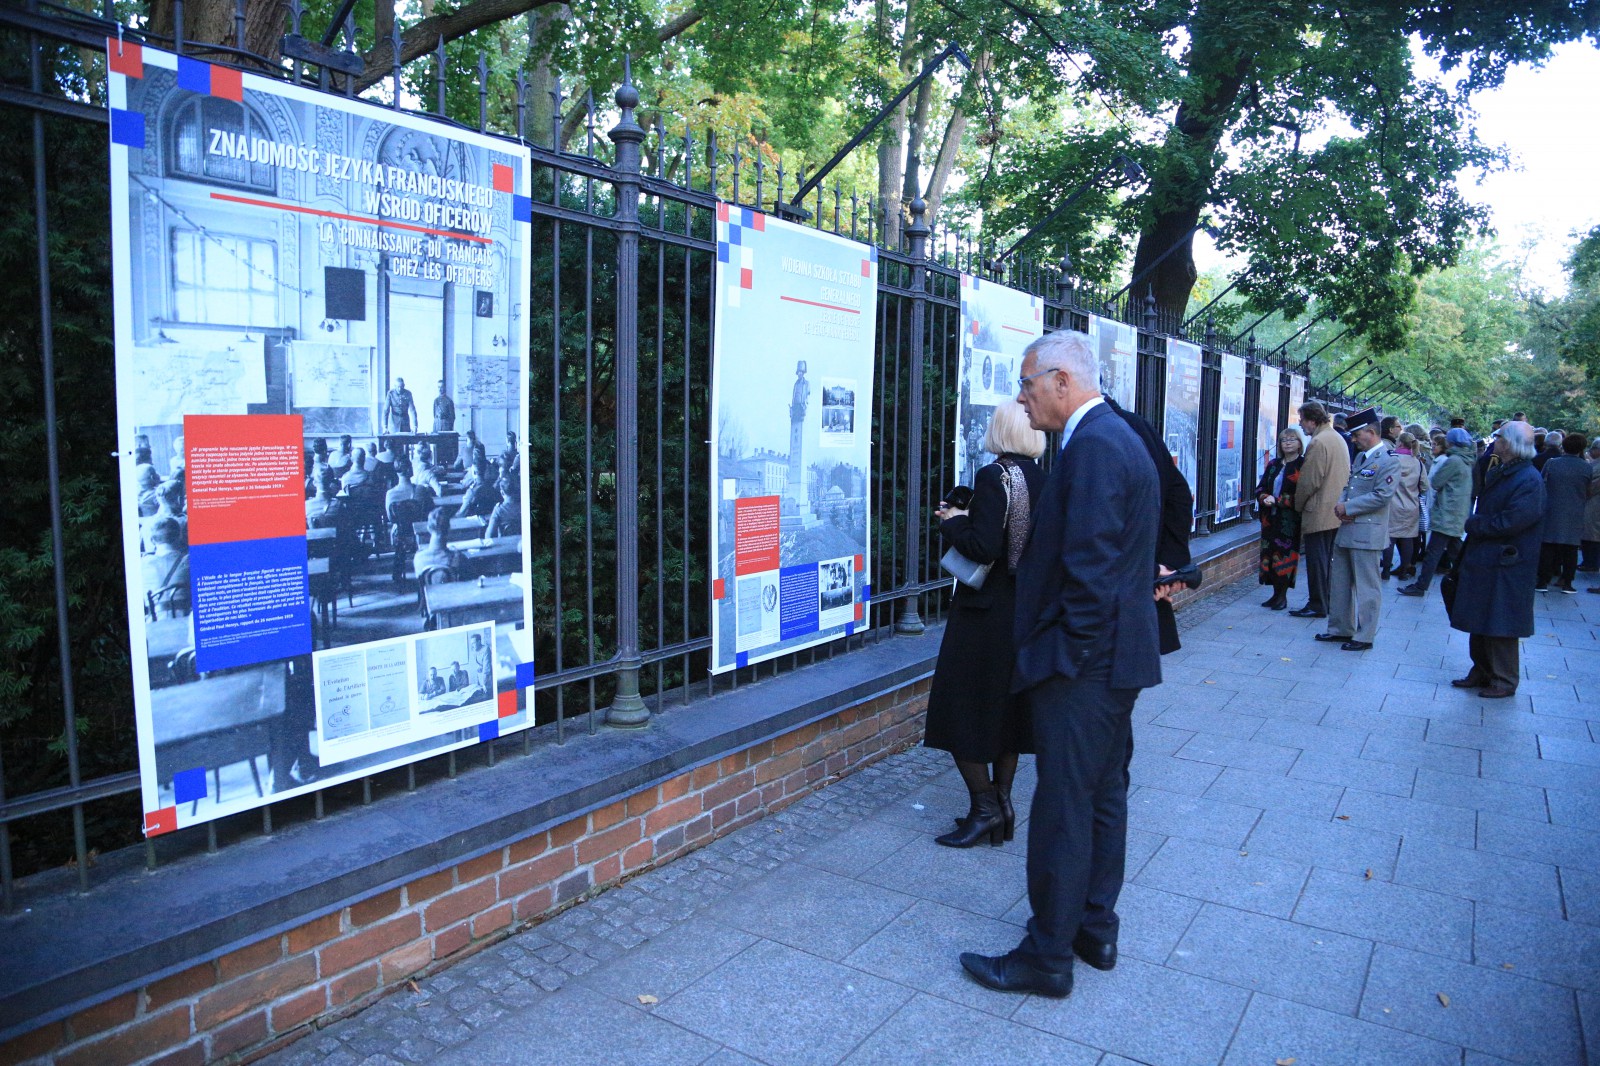 Ludzie oglądający wystawę w Galerii Plenerowej w Łazienkach Królewskich.